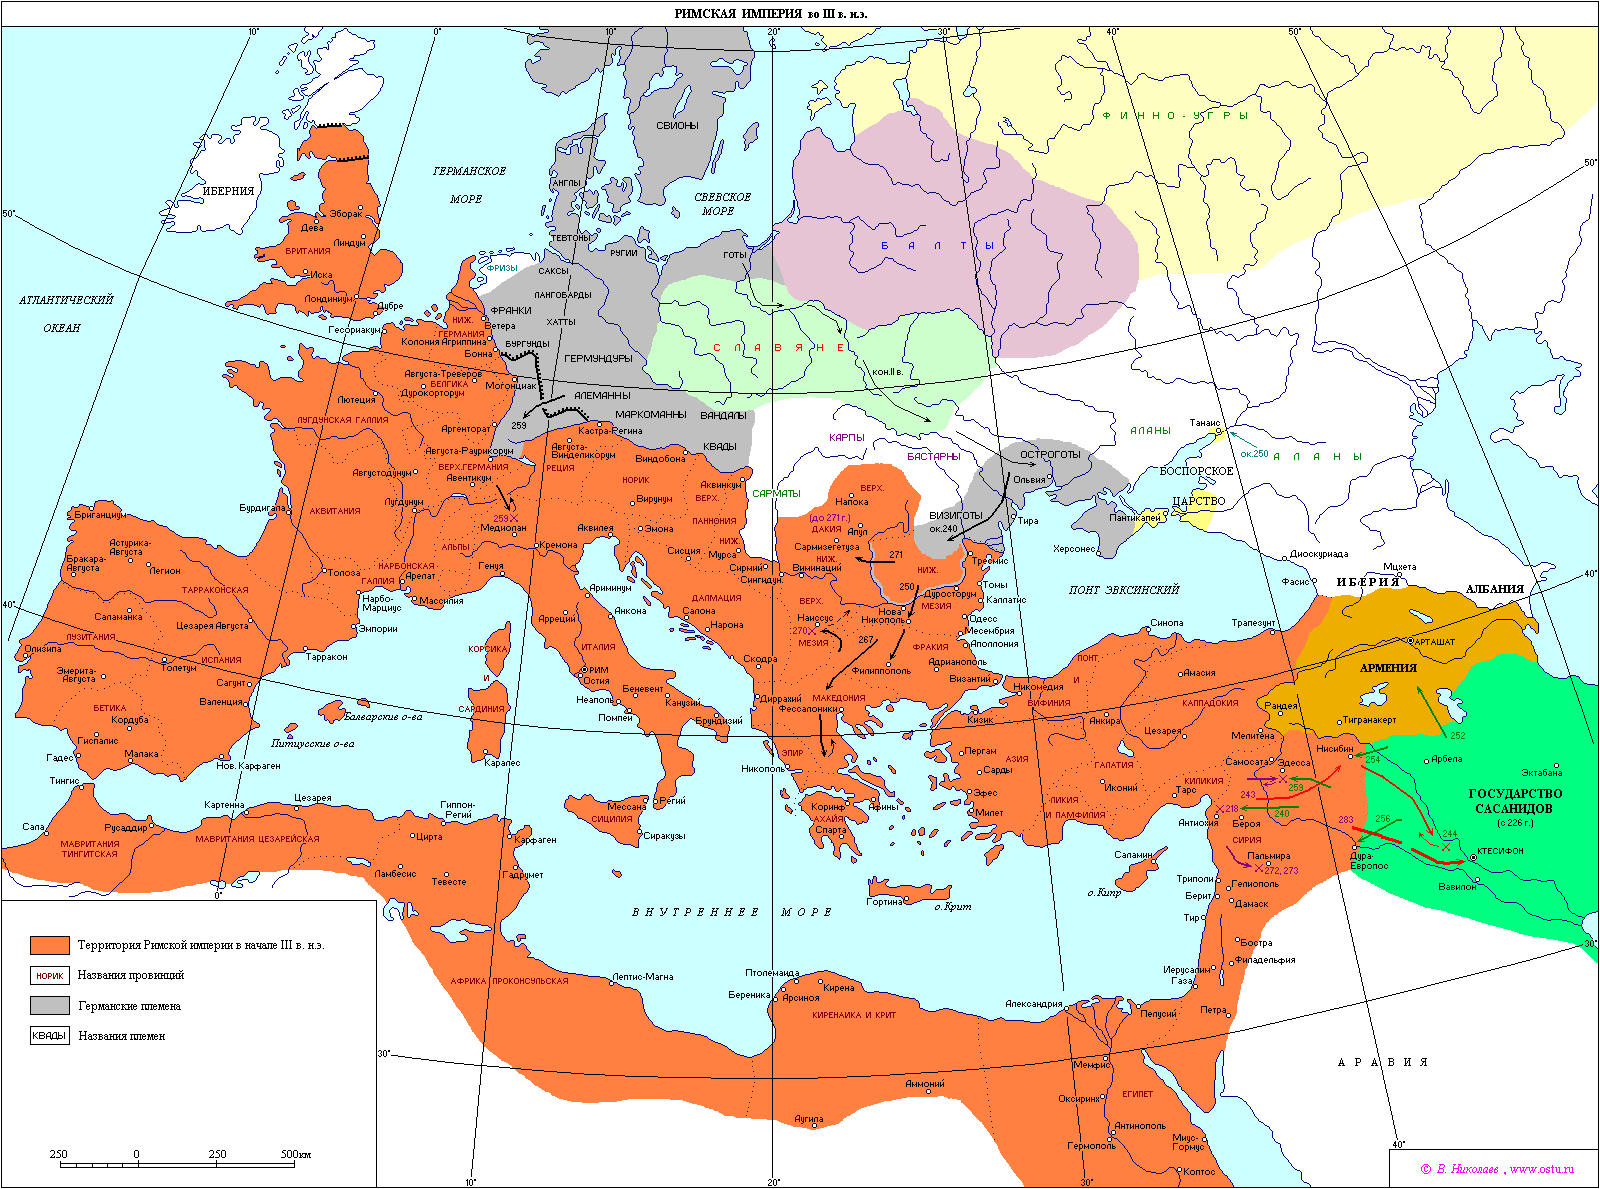 羅馬帝國